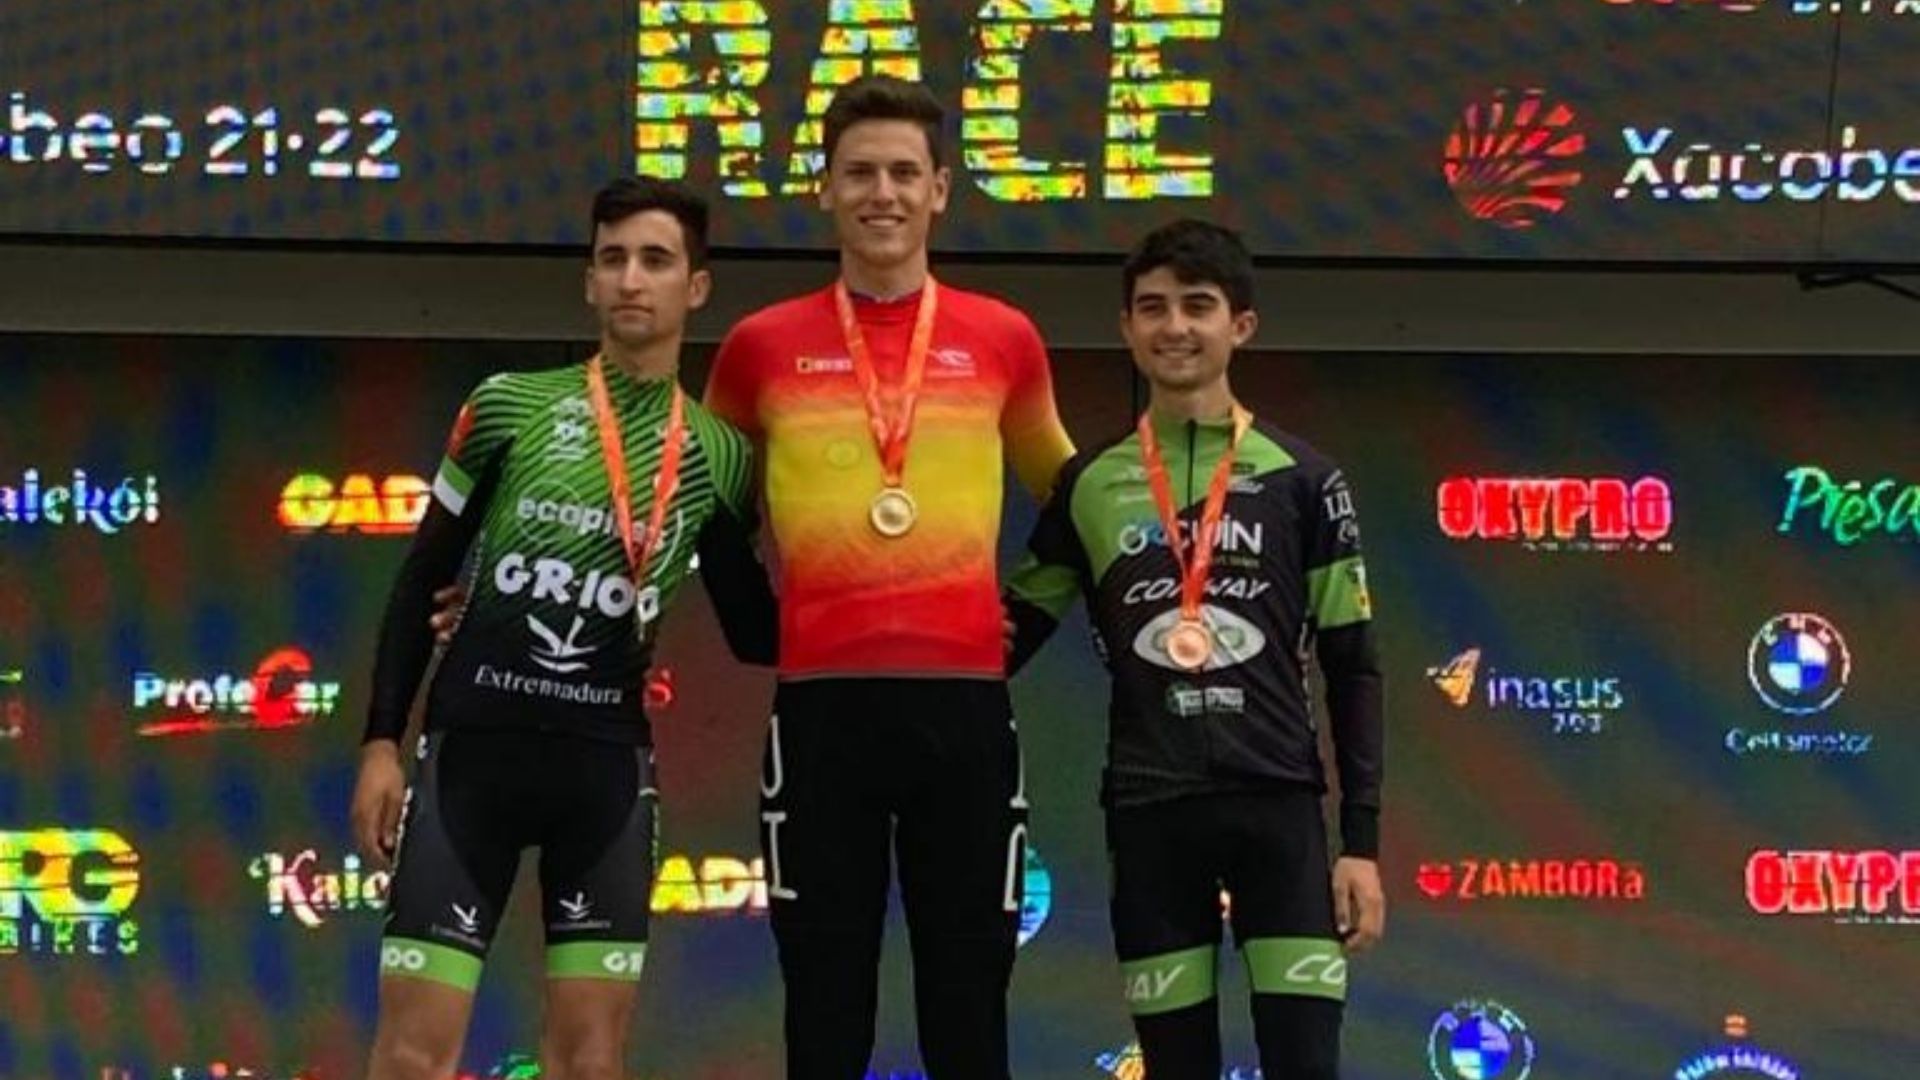 Jordi Gandia se proclama campeón de España de Ultramaratón (XCUM) en Sub-23 El Periódico de Ontinyent - Noticias en Ontinyent